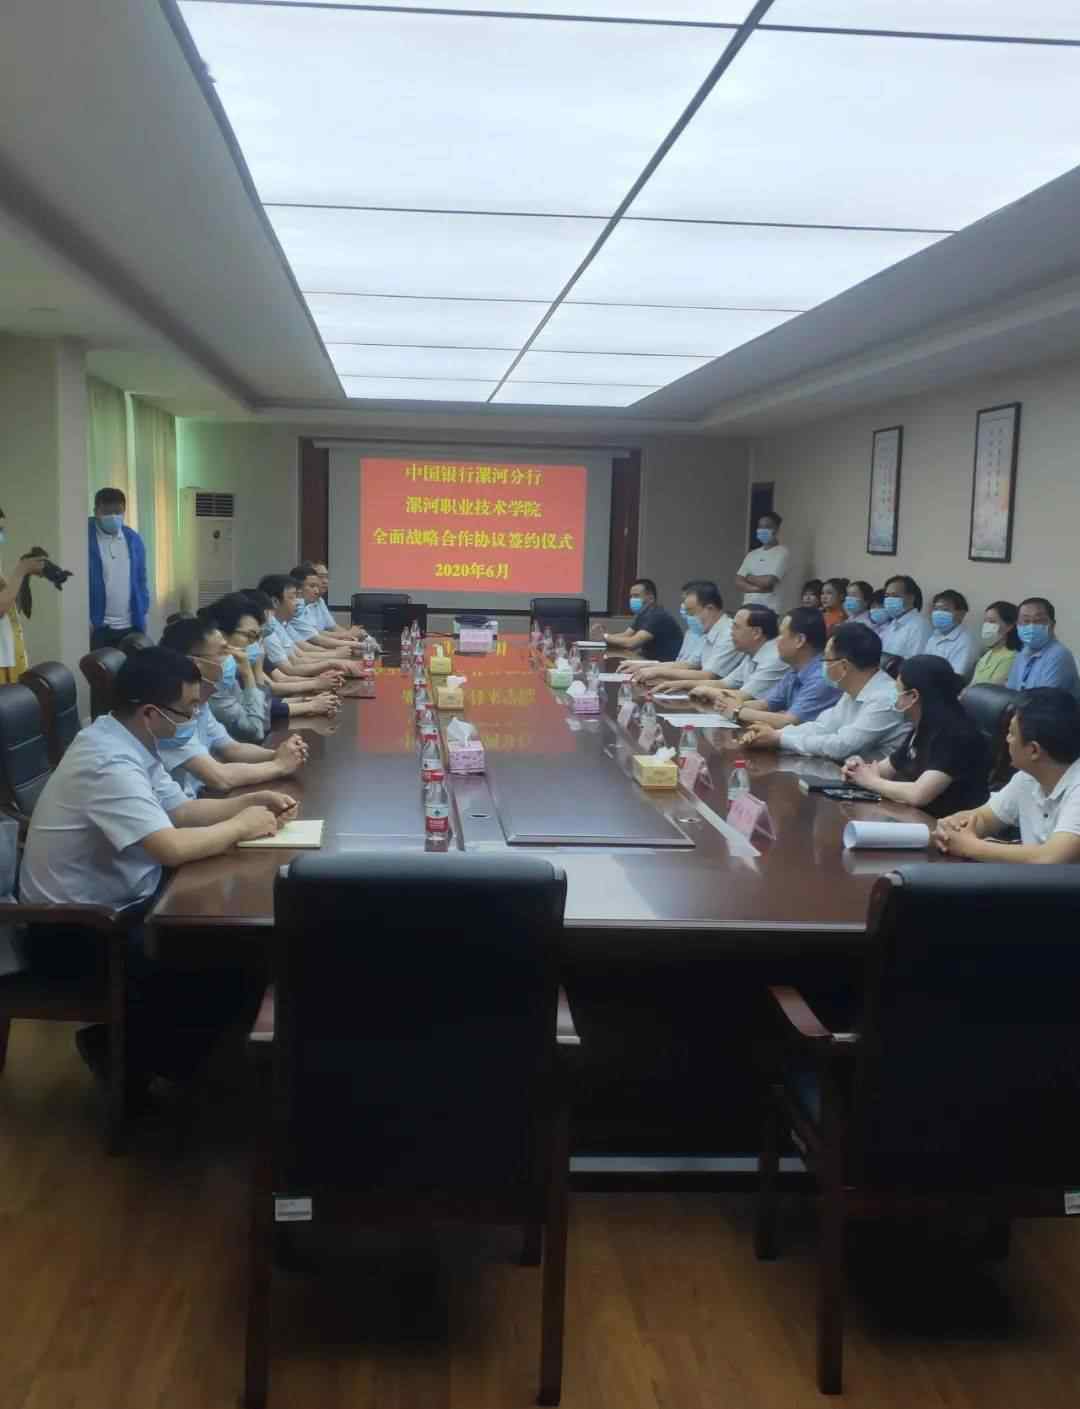 漯河银行 中国银行漯河分行与漯河职业技术学院 举行全面战略合作签约仪式